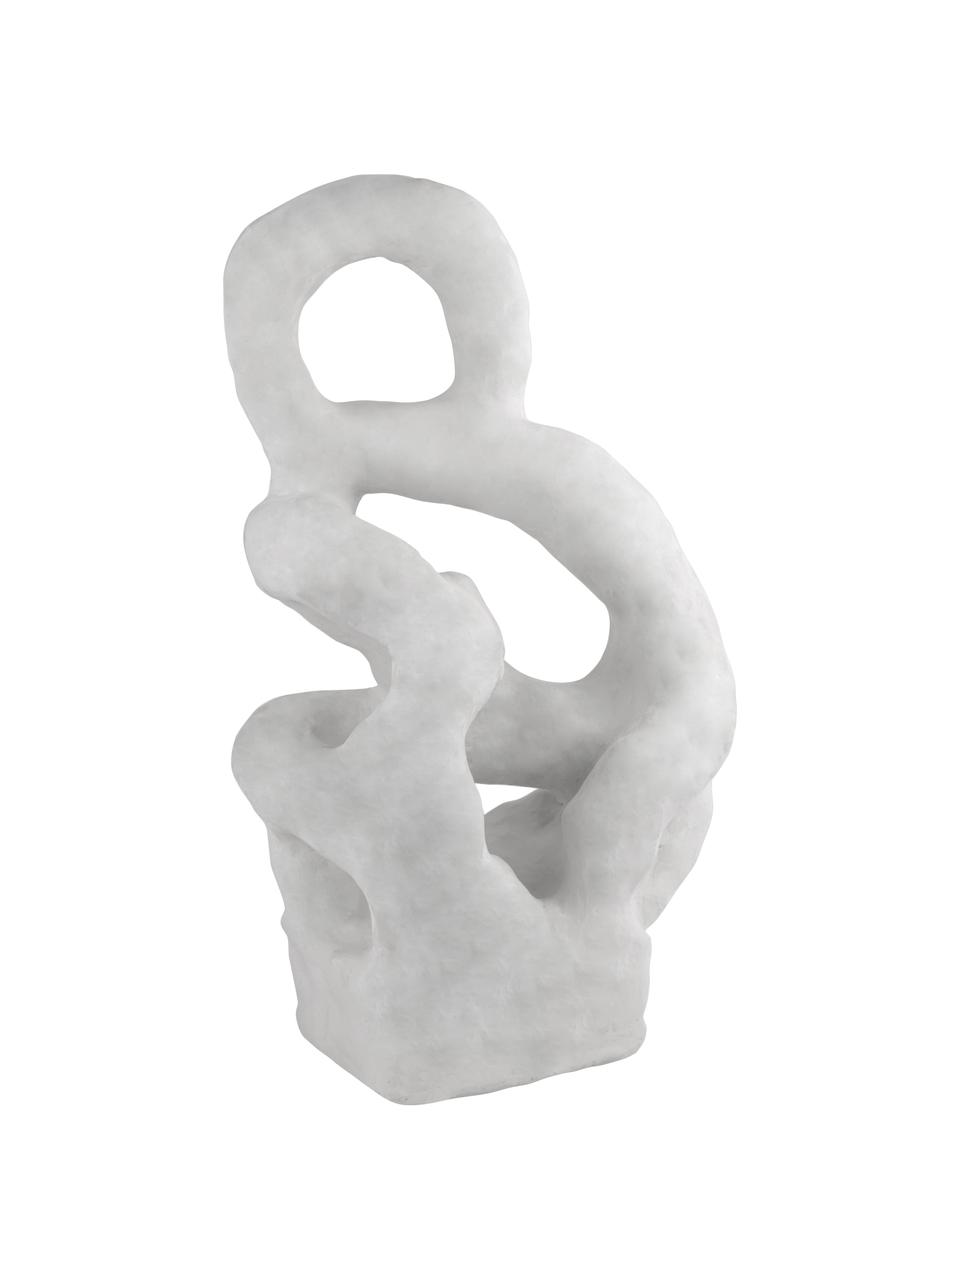 Deko-Objekt Wigi aus Stein, Stein, Gebrochenes Weiß, B 19 x H 32 cm